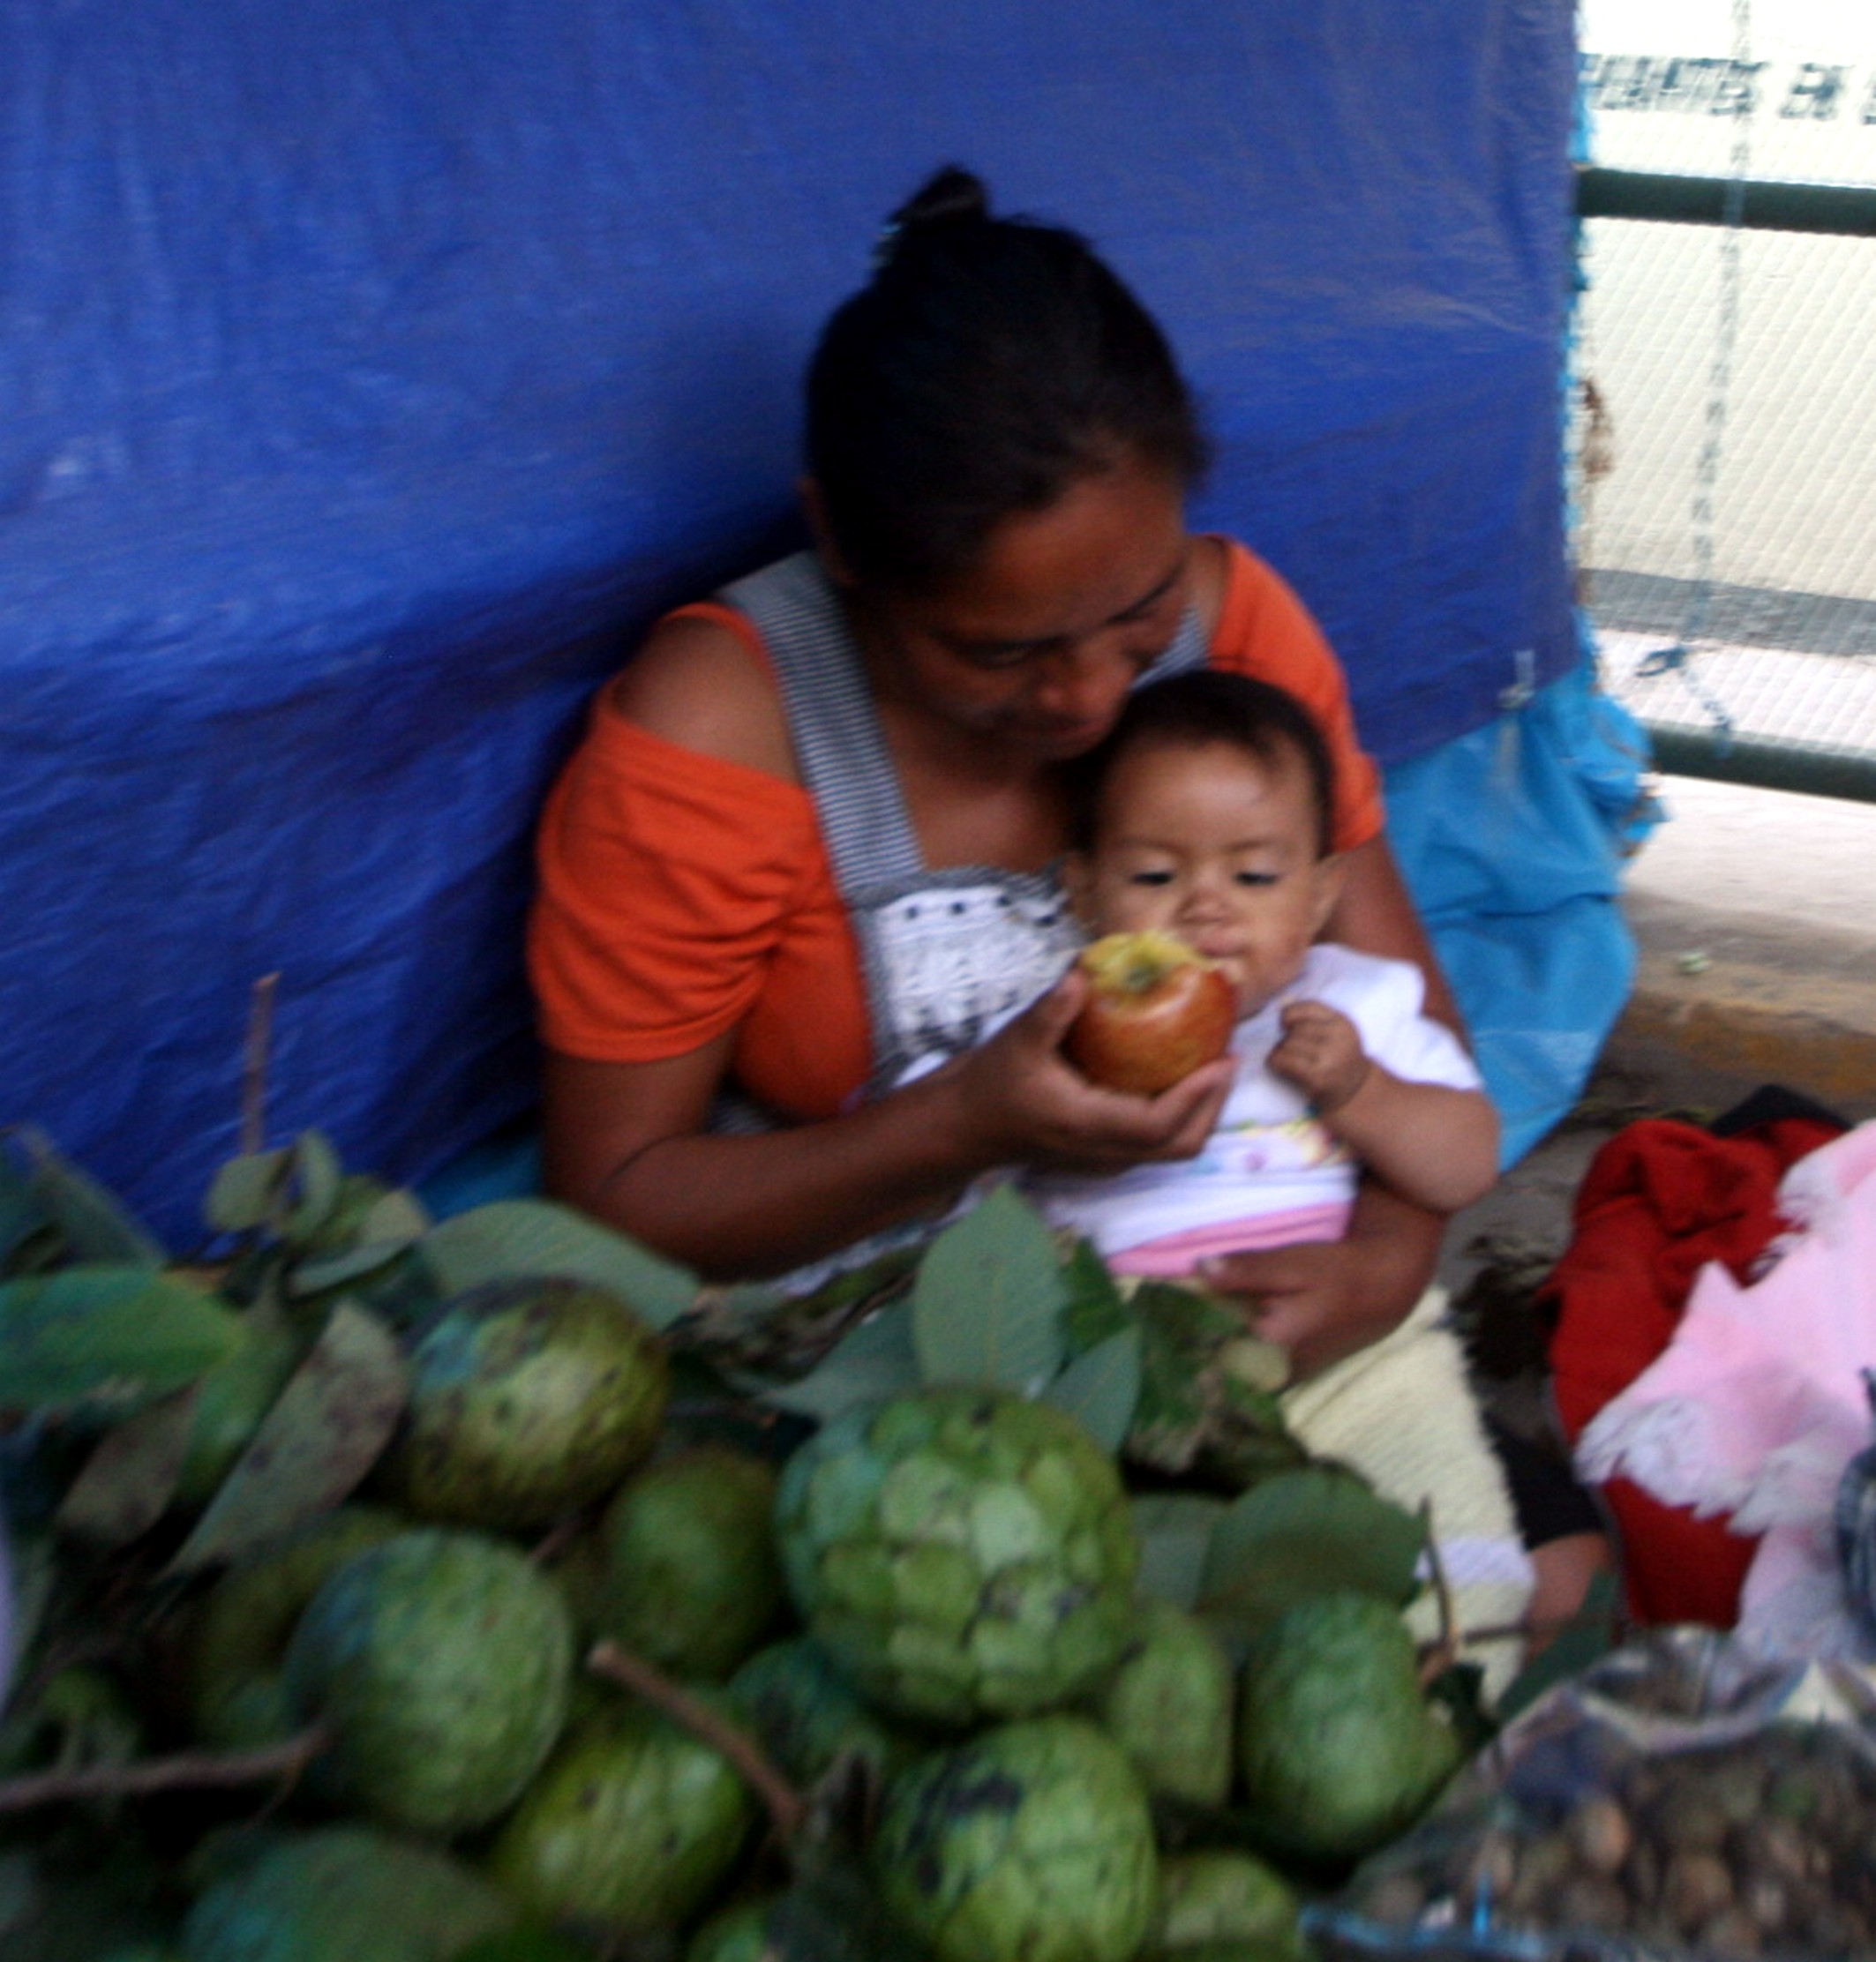 Mercado del dia de muertos en Tlacolula, Mujer alimentando niño